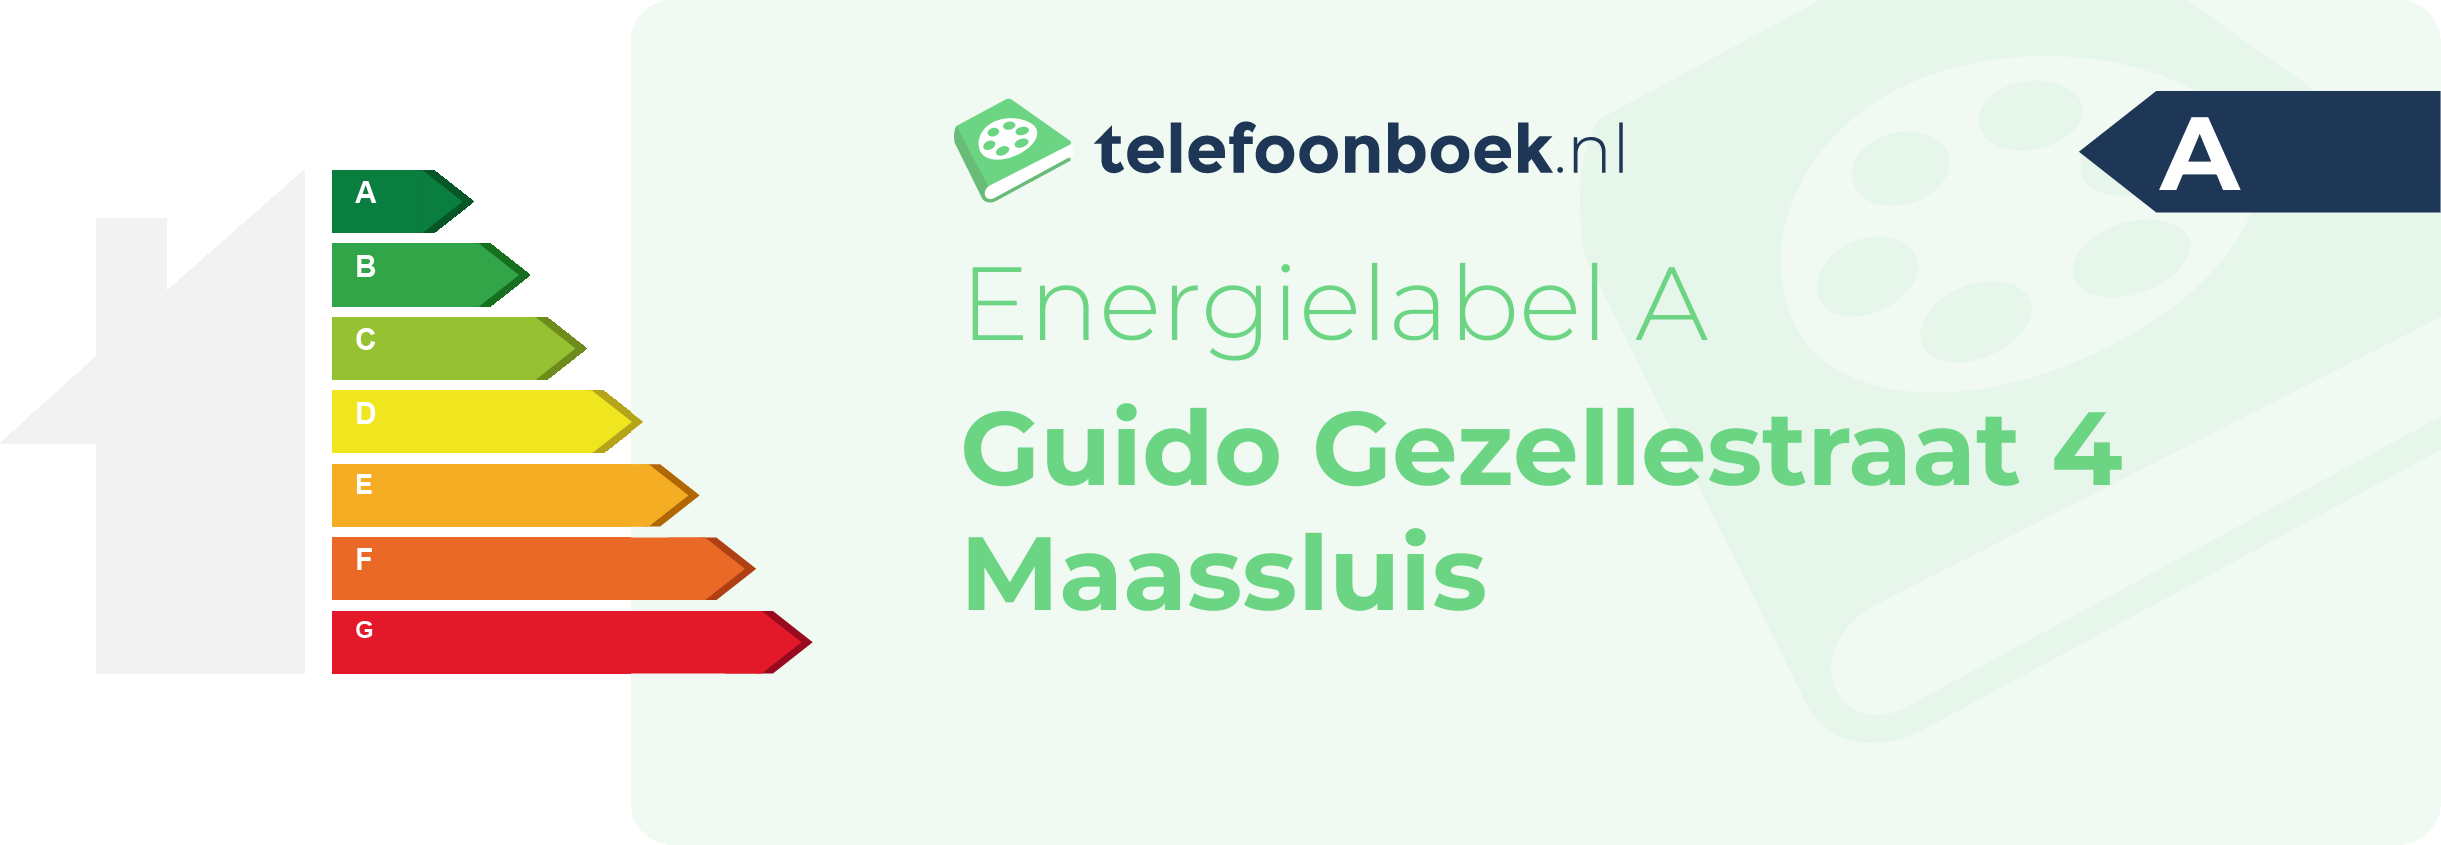 Energielabel Guido Gezellestraat 4 Maassluis